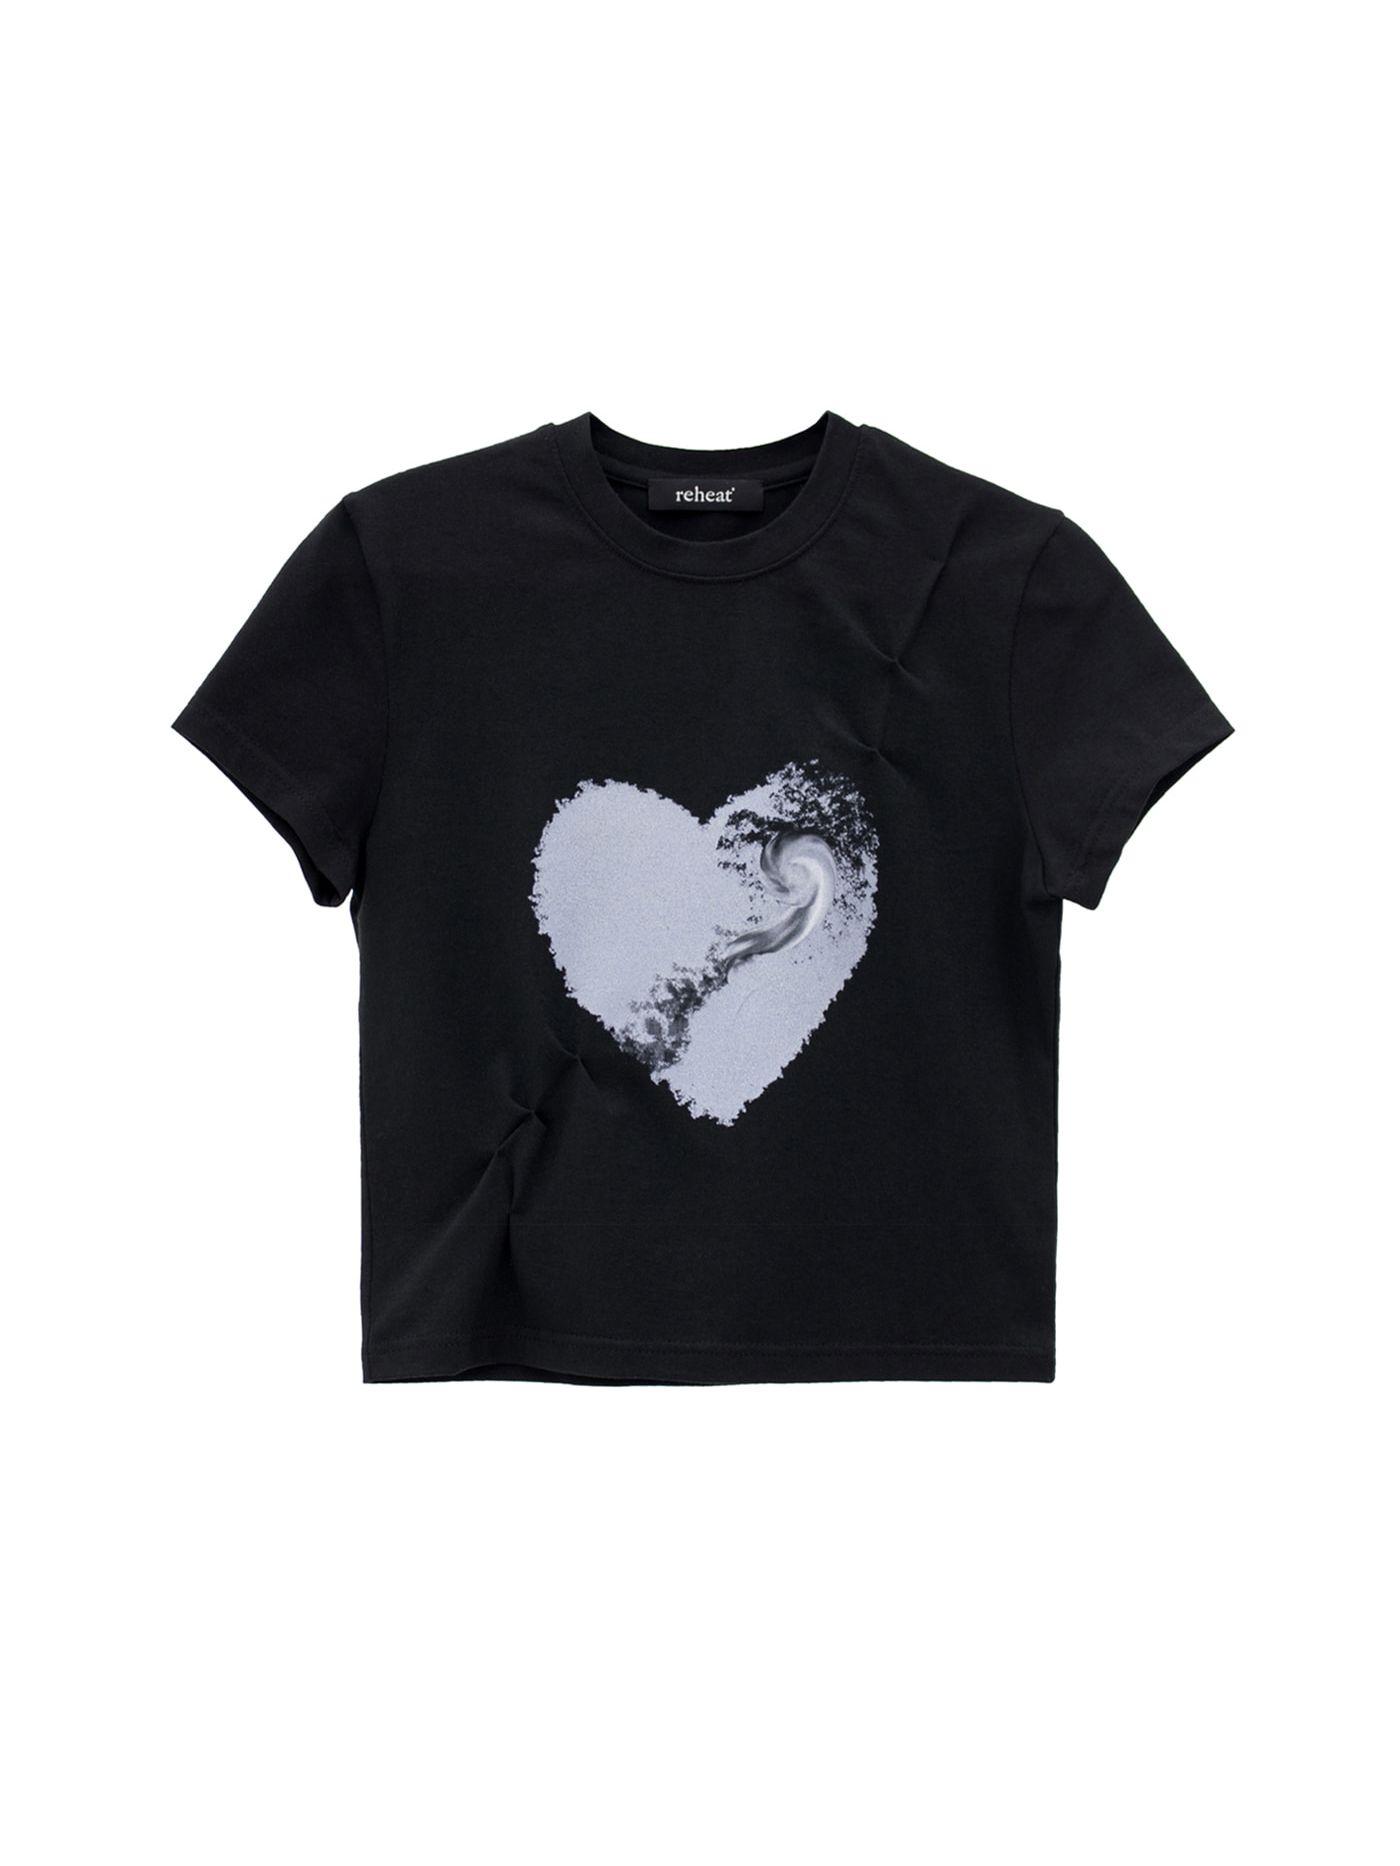 Heart Cloud T-Shirt - Black